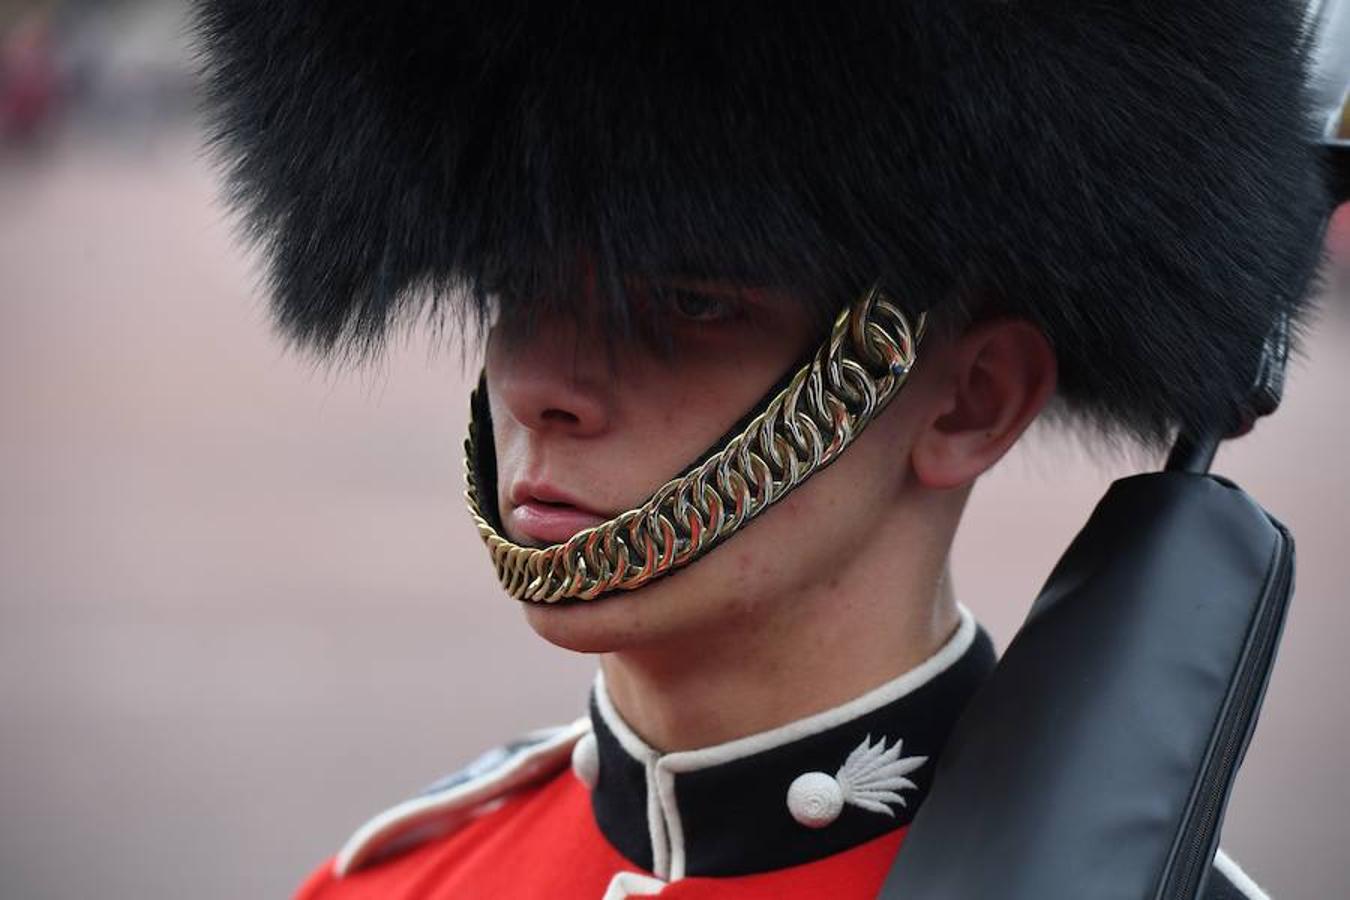 Un miembros de la Guardia Real inglesa.